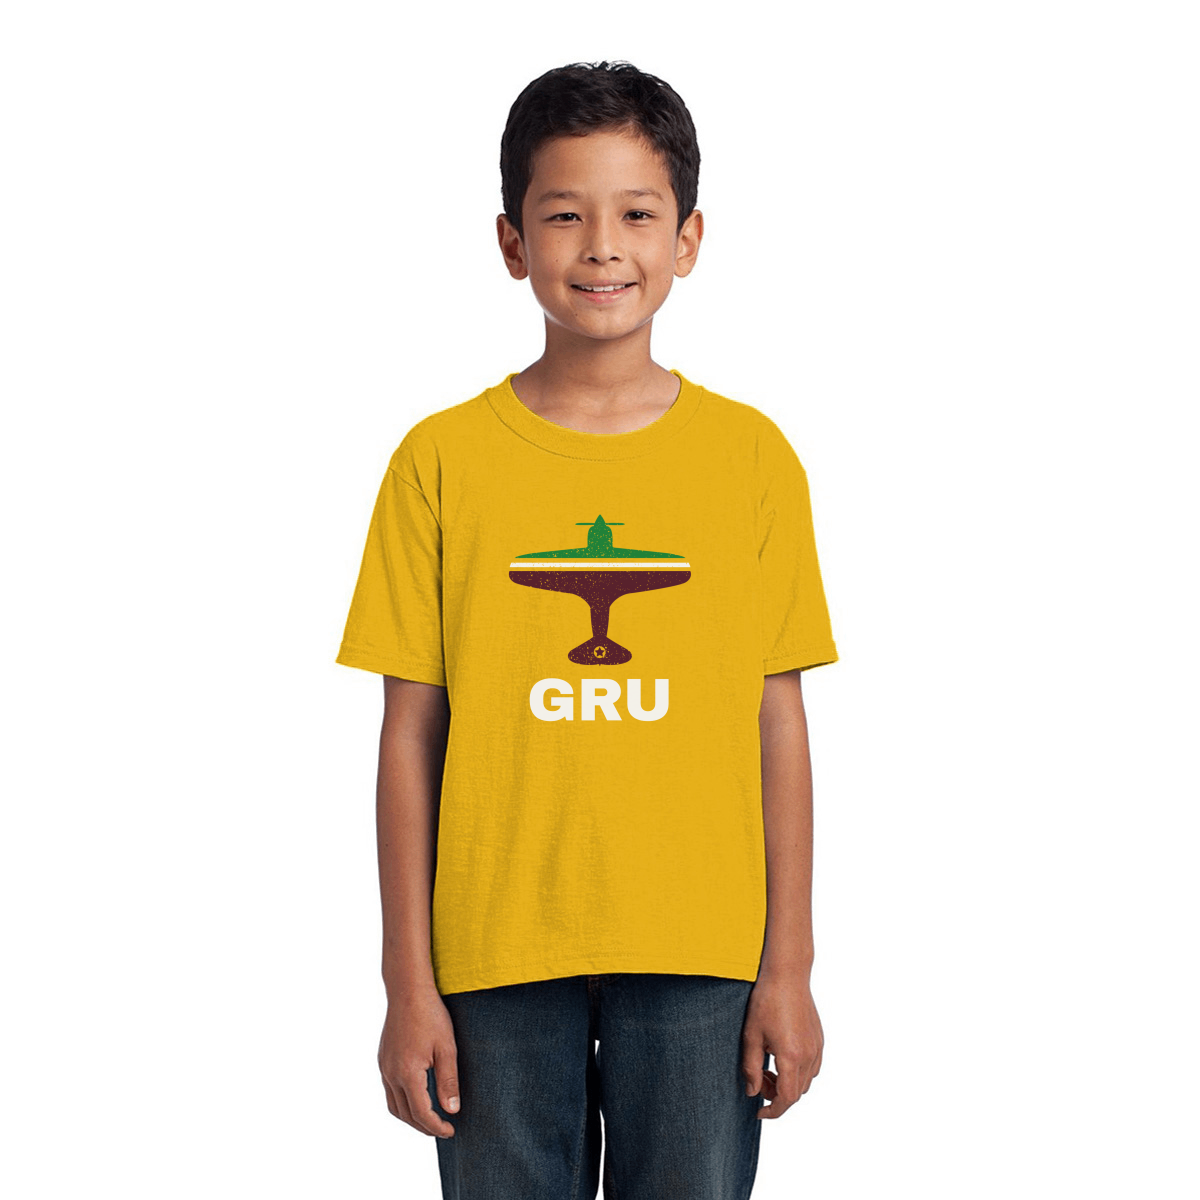 Fly Sao Paulo GRU Airport Kids T-shirt | Yellow